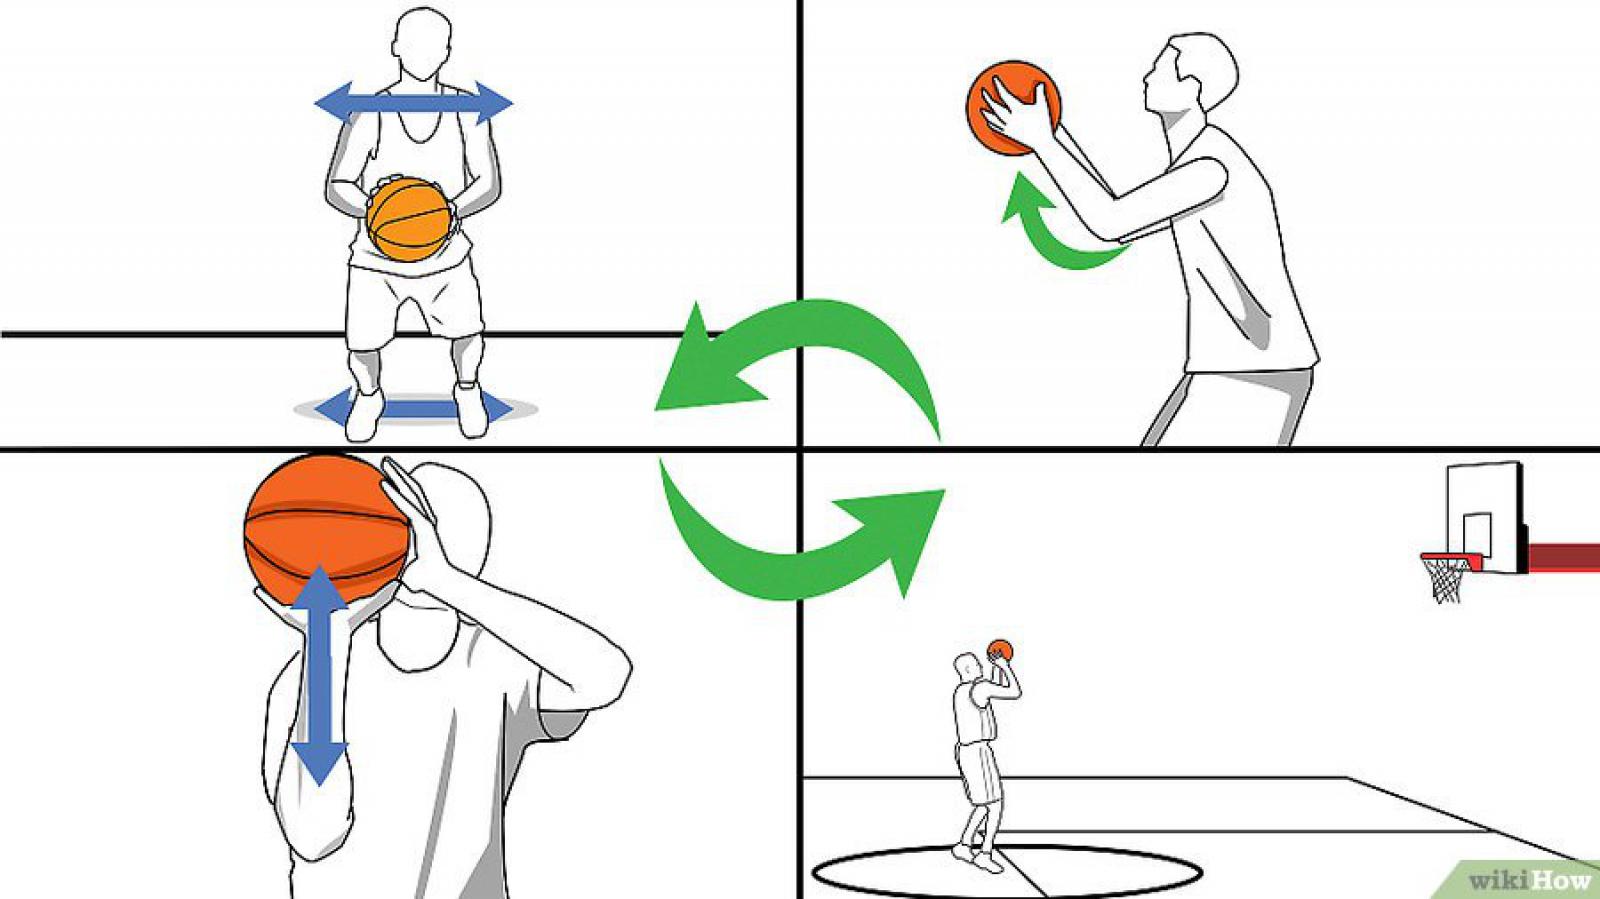 Кидать легко. Правильный бросок в баскетболе. Закибываиь мячи в баскетбольное кольцо. Бросок мяча в кольцо в баскетболе. Правильный бросок мяча в баскетболе.